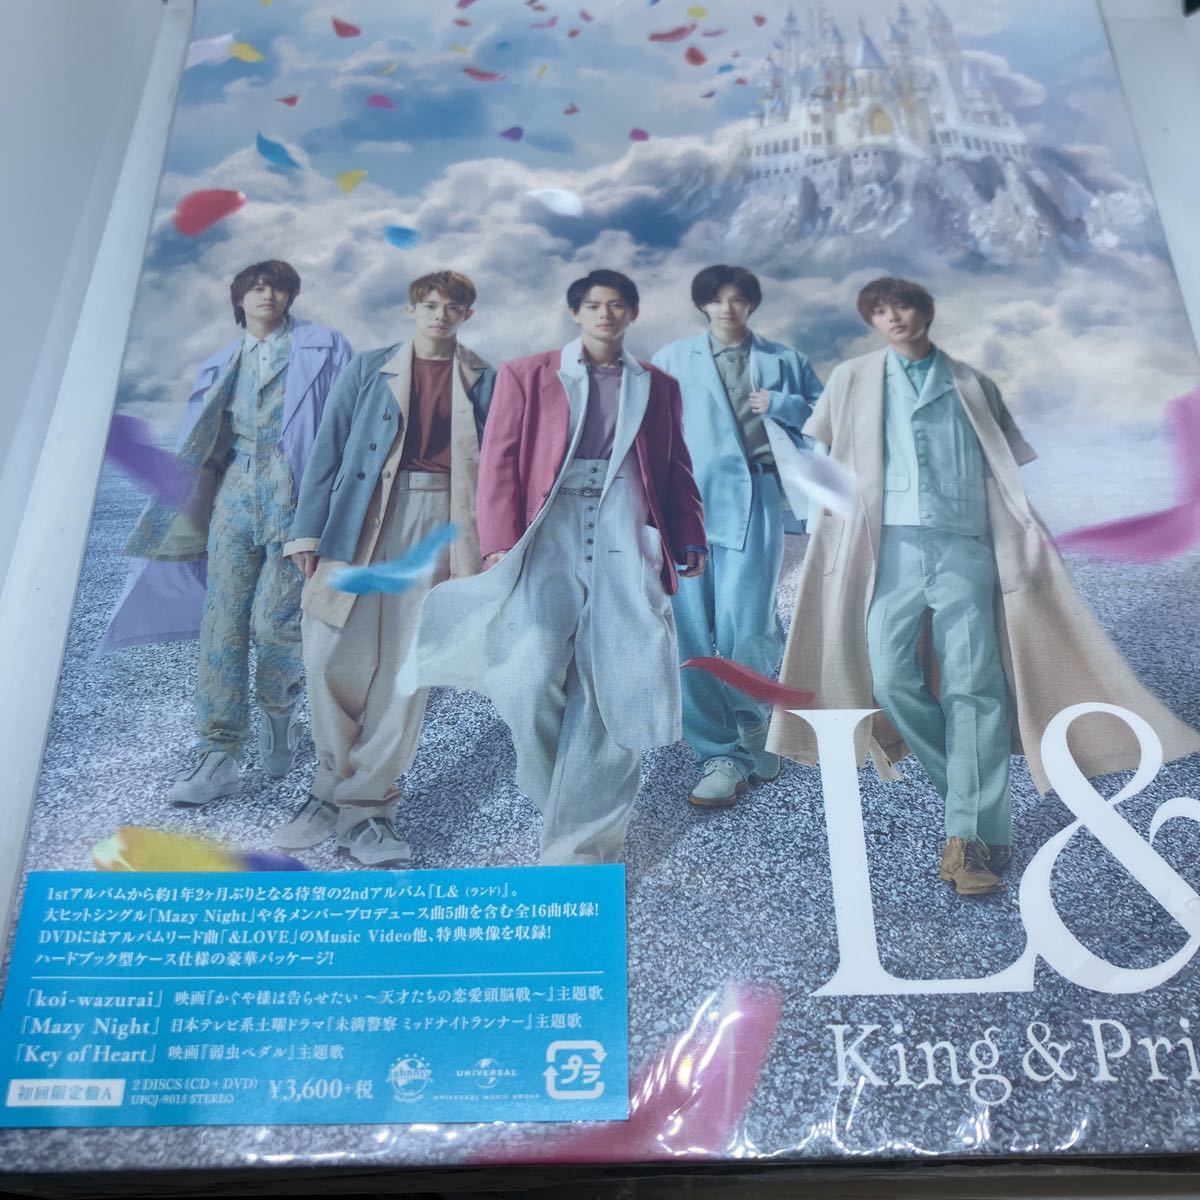 値下げ L & King & Prince キンプリ ランド 初回限定盤A CD+DVD豪華 